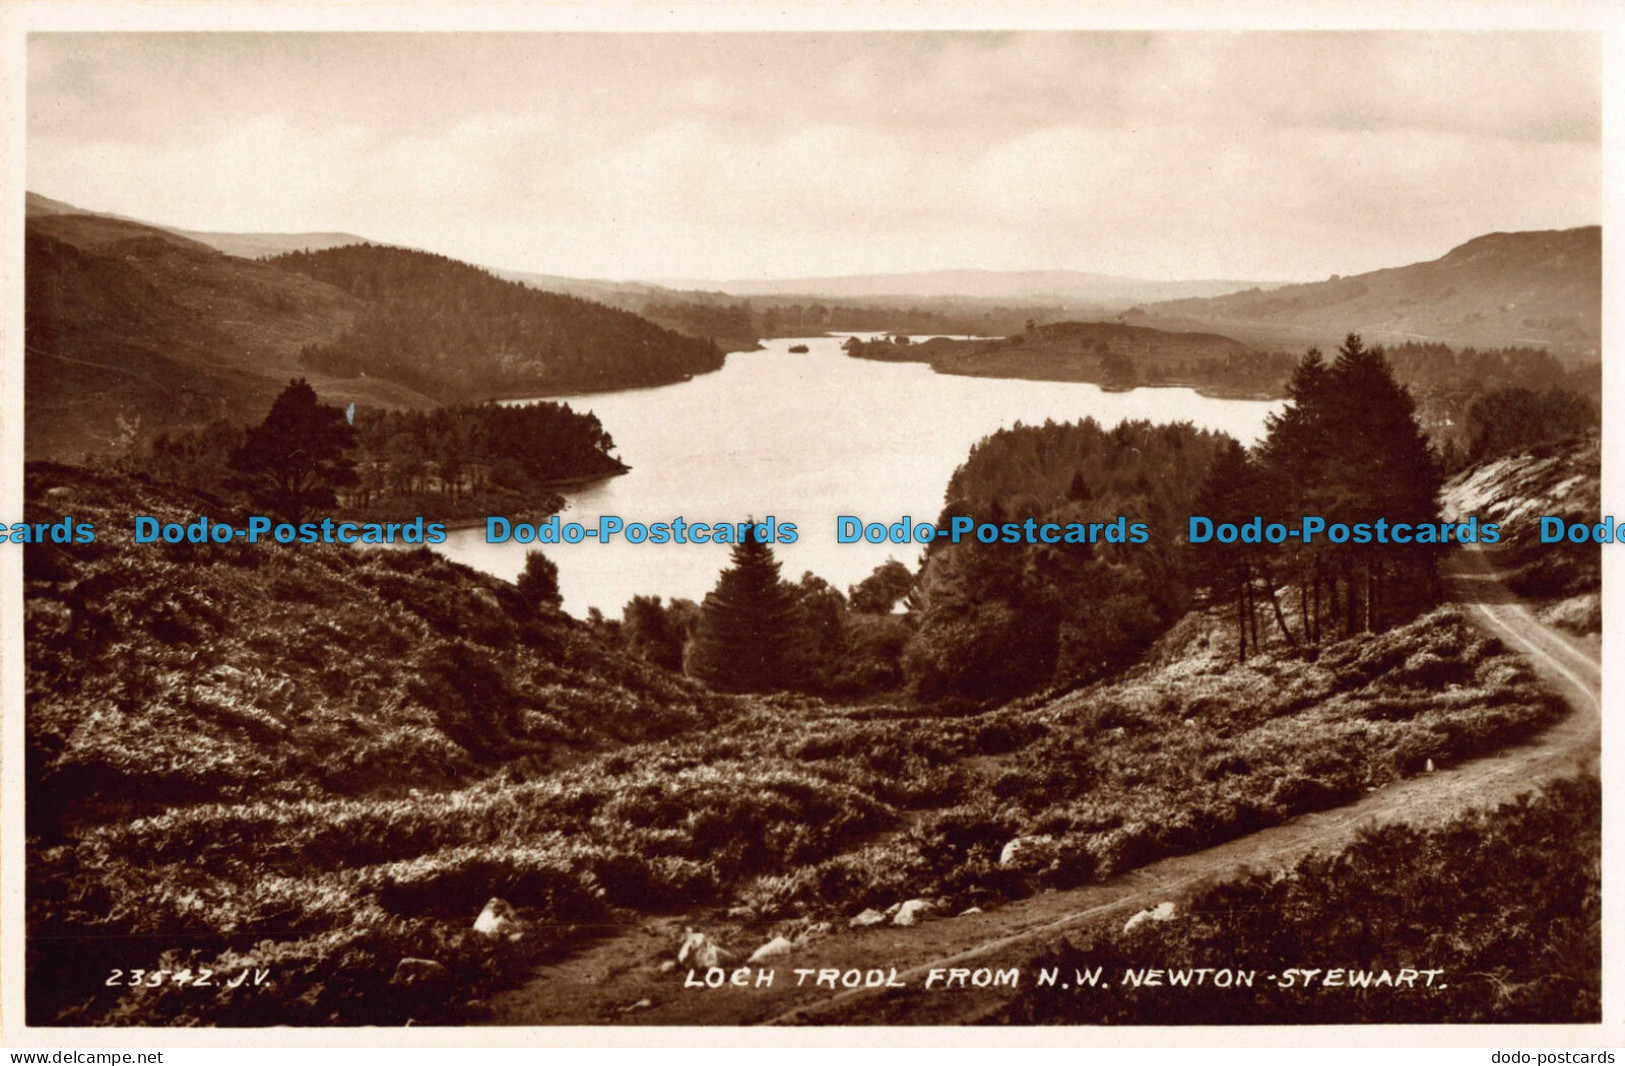 R043789 Loch Trool From N. W. Newton. Stewart. Valentine. RP - World